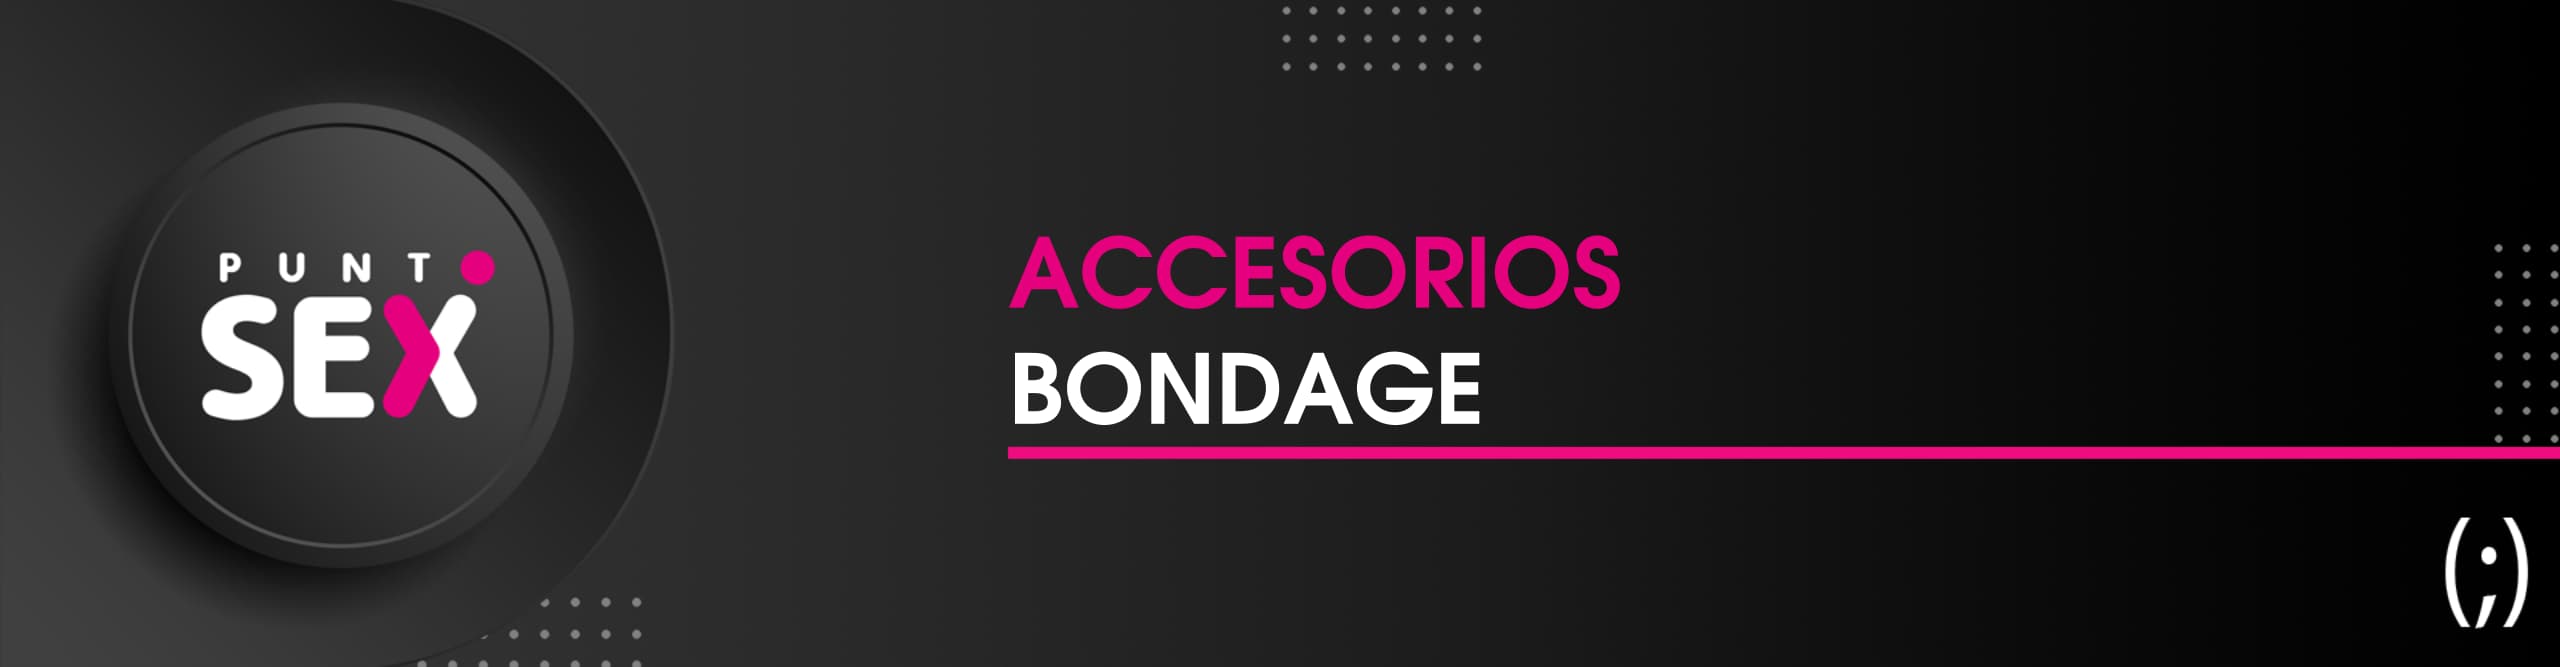 Accesorios bondage